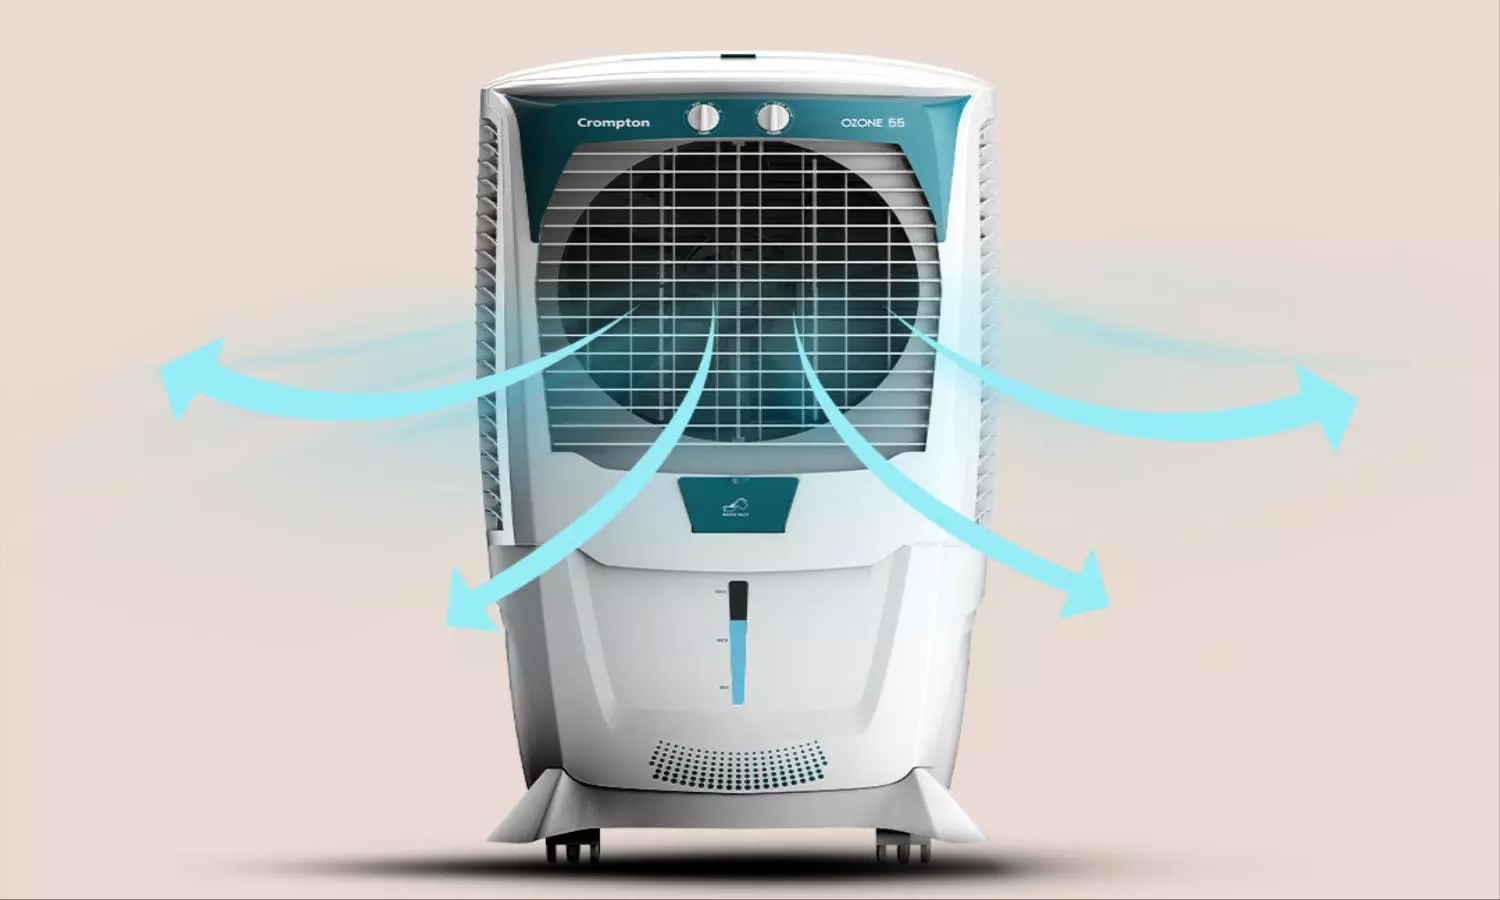 Air Coolers Discount Offers: मिल रहा 52% तक की छूट, बेहद सस्ते में ले जाए घर